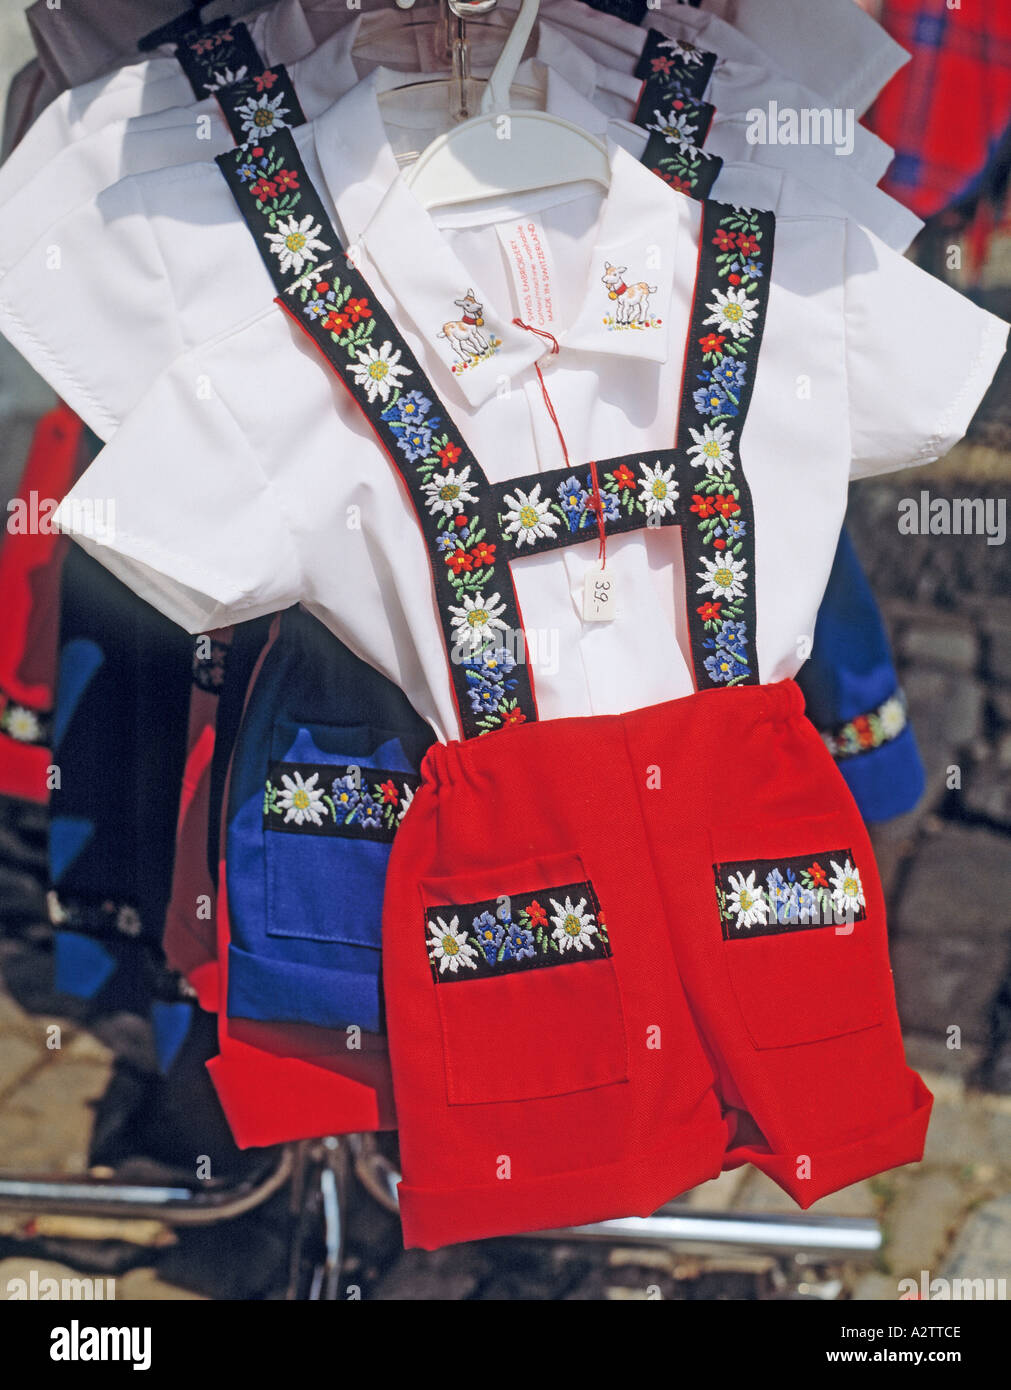 Suiza trajes típicos recuerdos folklóricos Fotografía de stock - Alamy